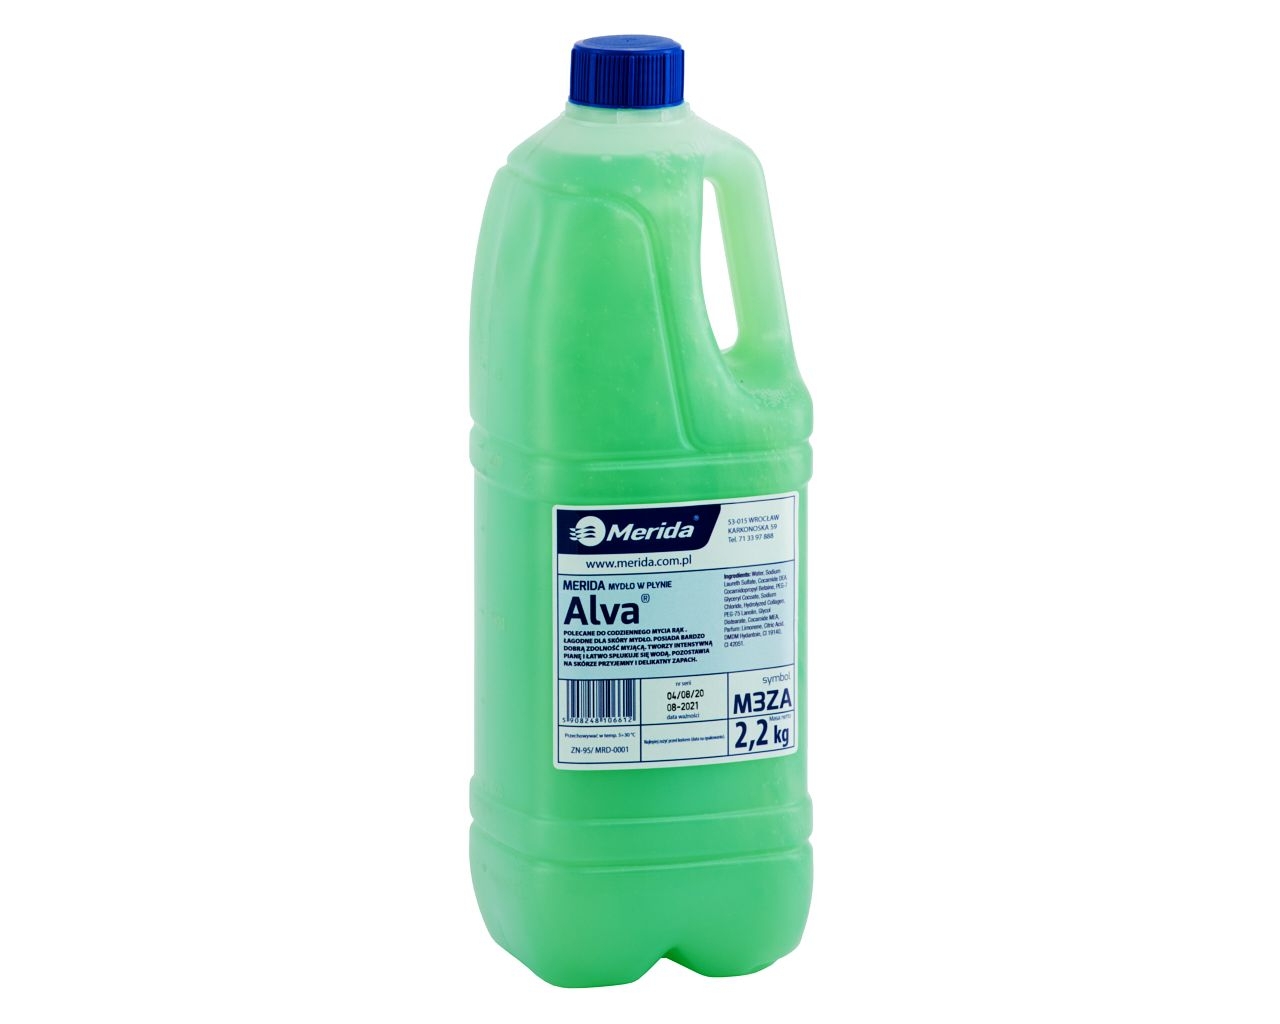 Mydło w płynie MERIDA ALVA, zielone 2,2 kg, zapach cytrusowy